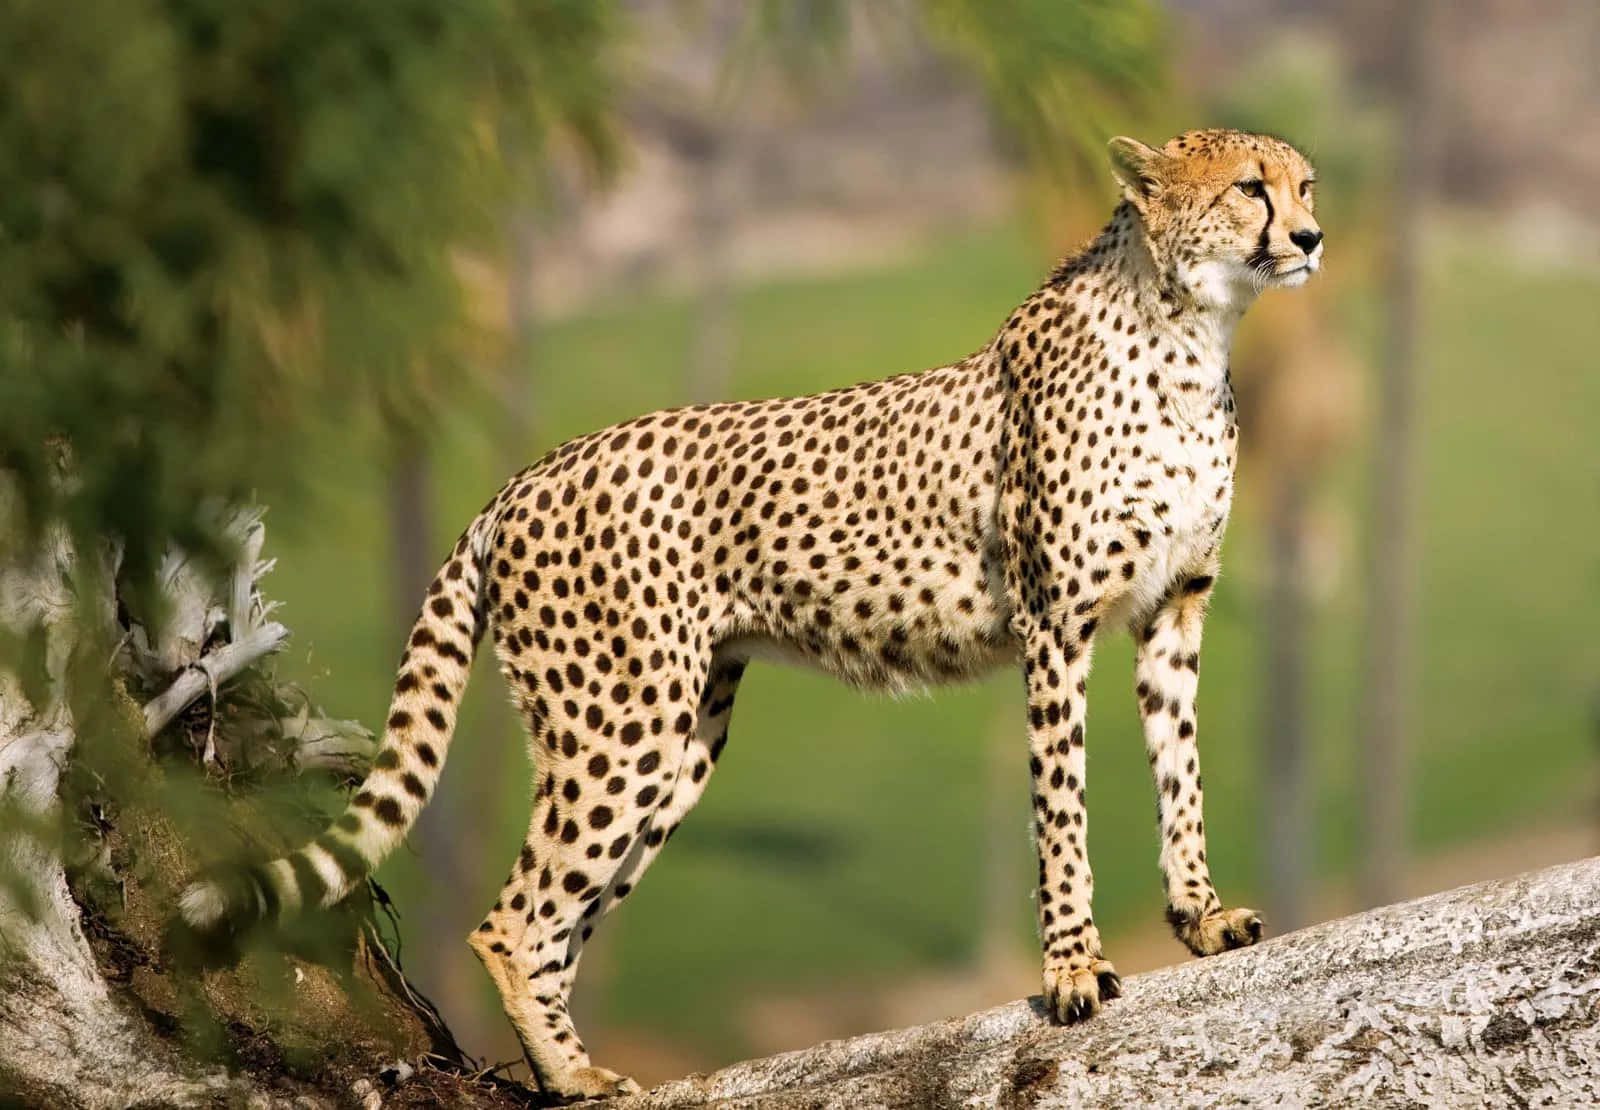 Imagende Un Cheetah Cazando Su Presa